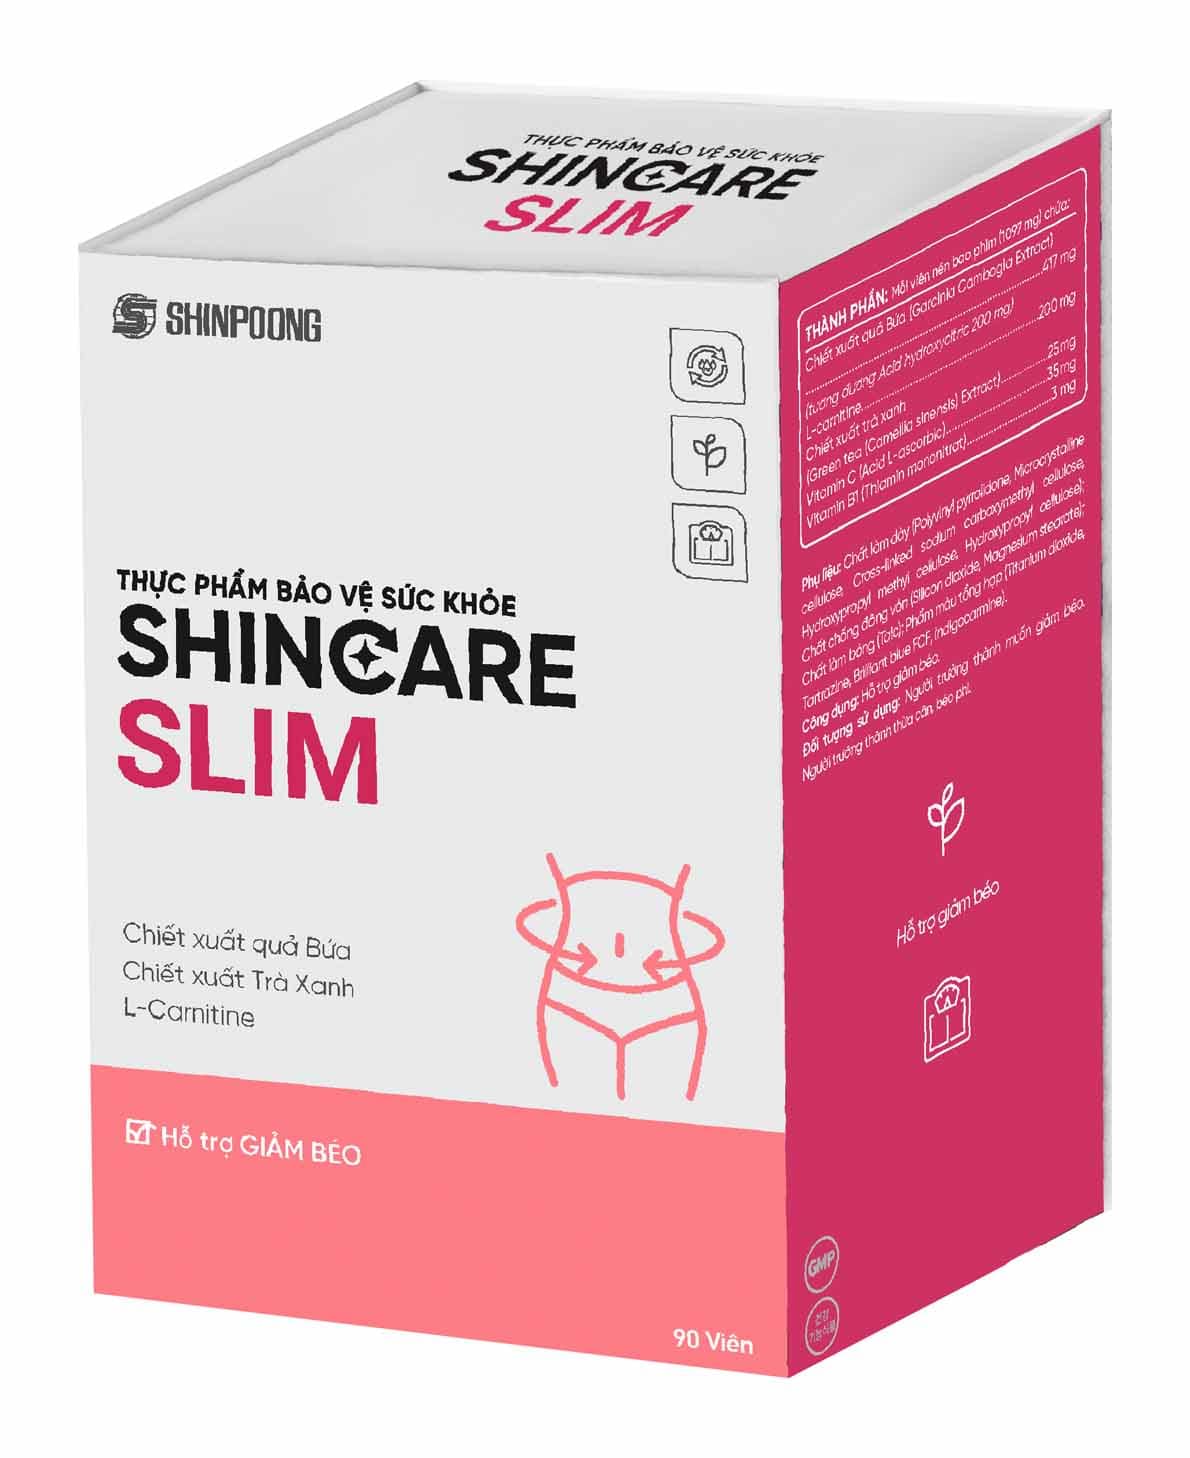 Viên uống Shincare Slim - Hỗ trợ giảm hấp thu chất béo, kiểm soát cân nặng - Hộp 90 viên